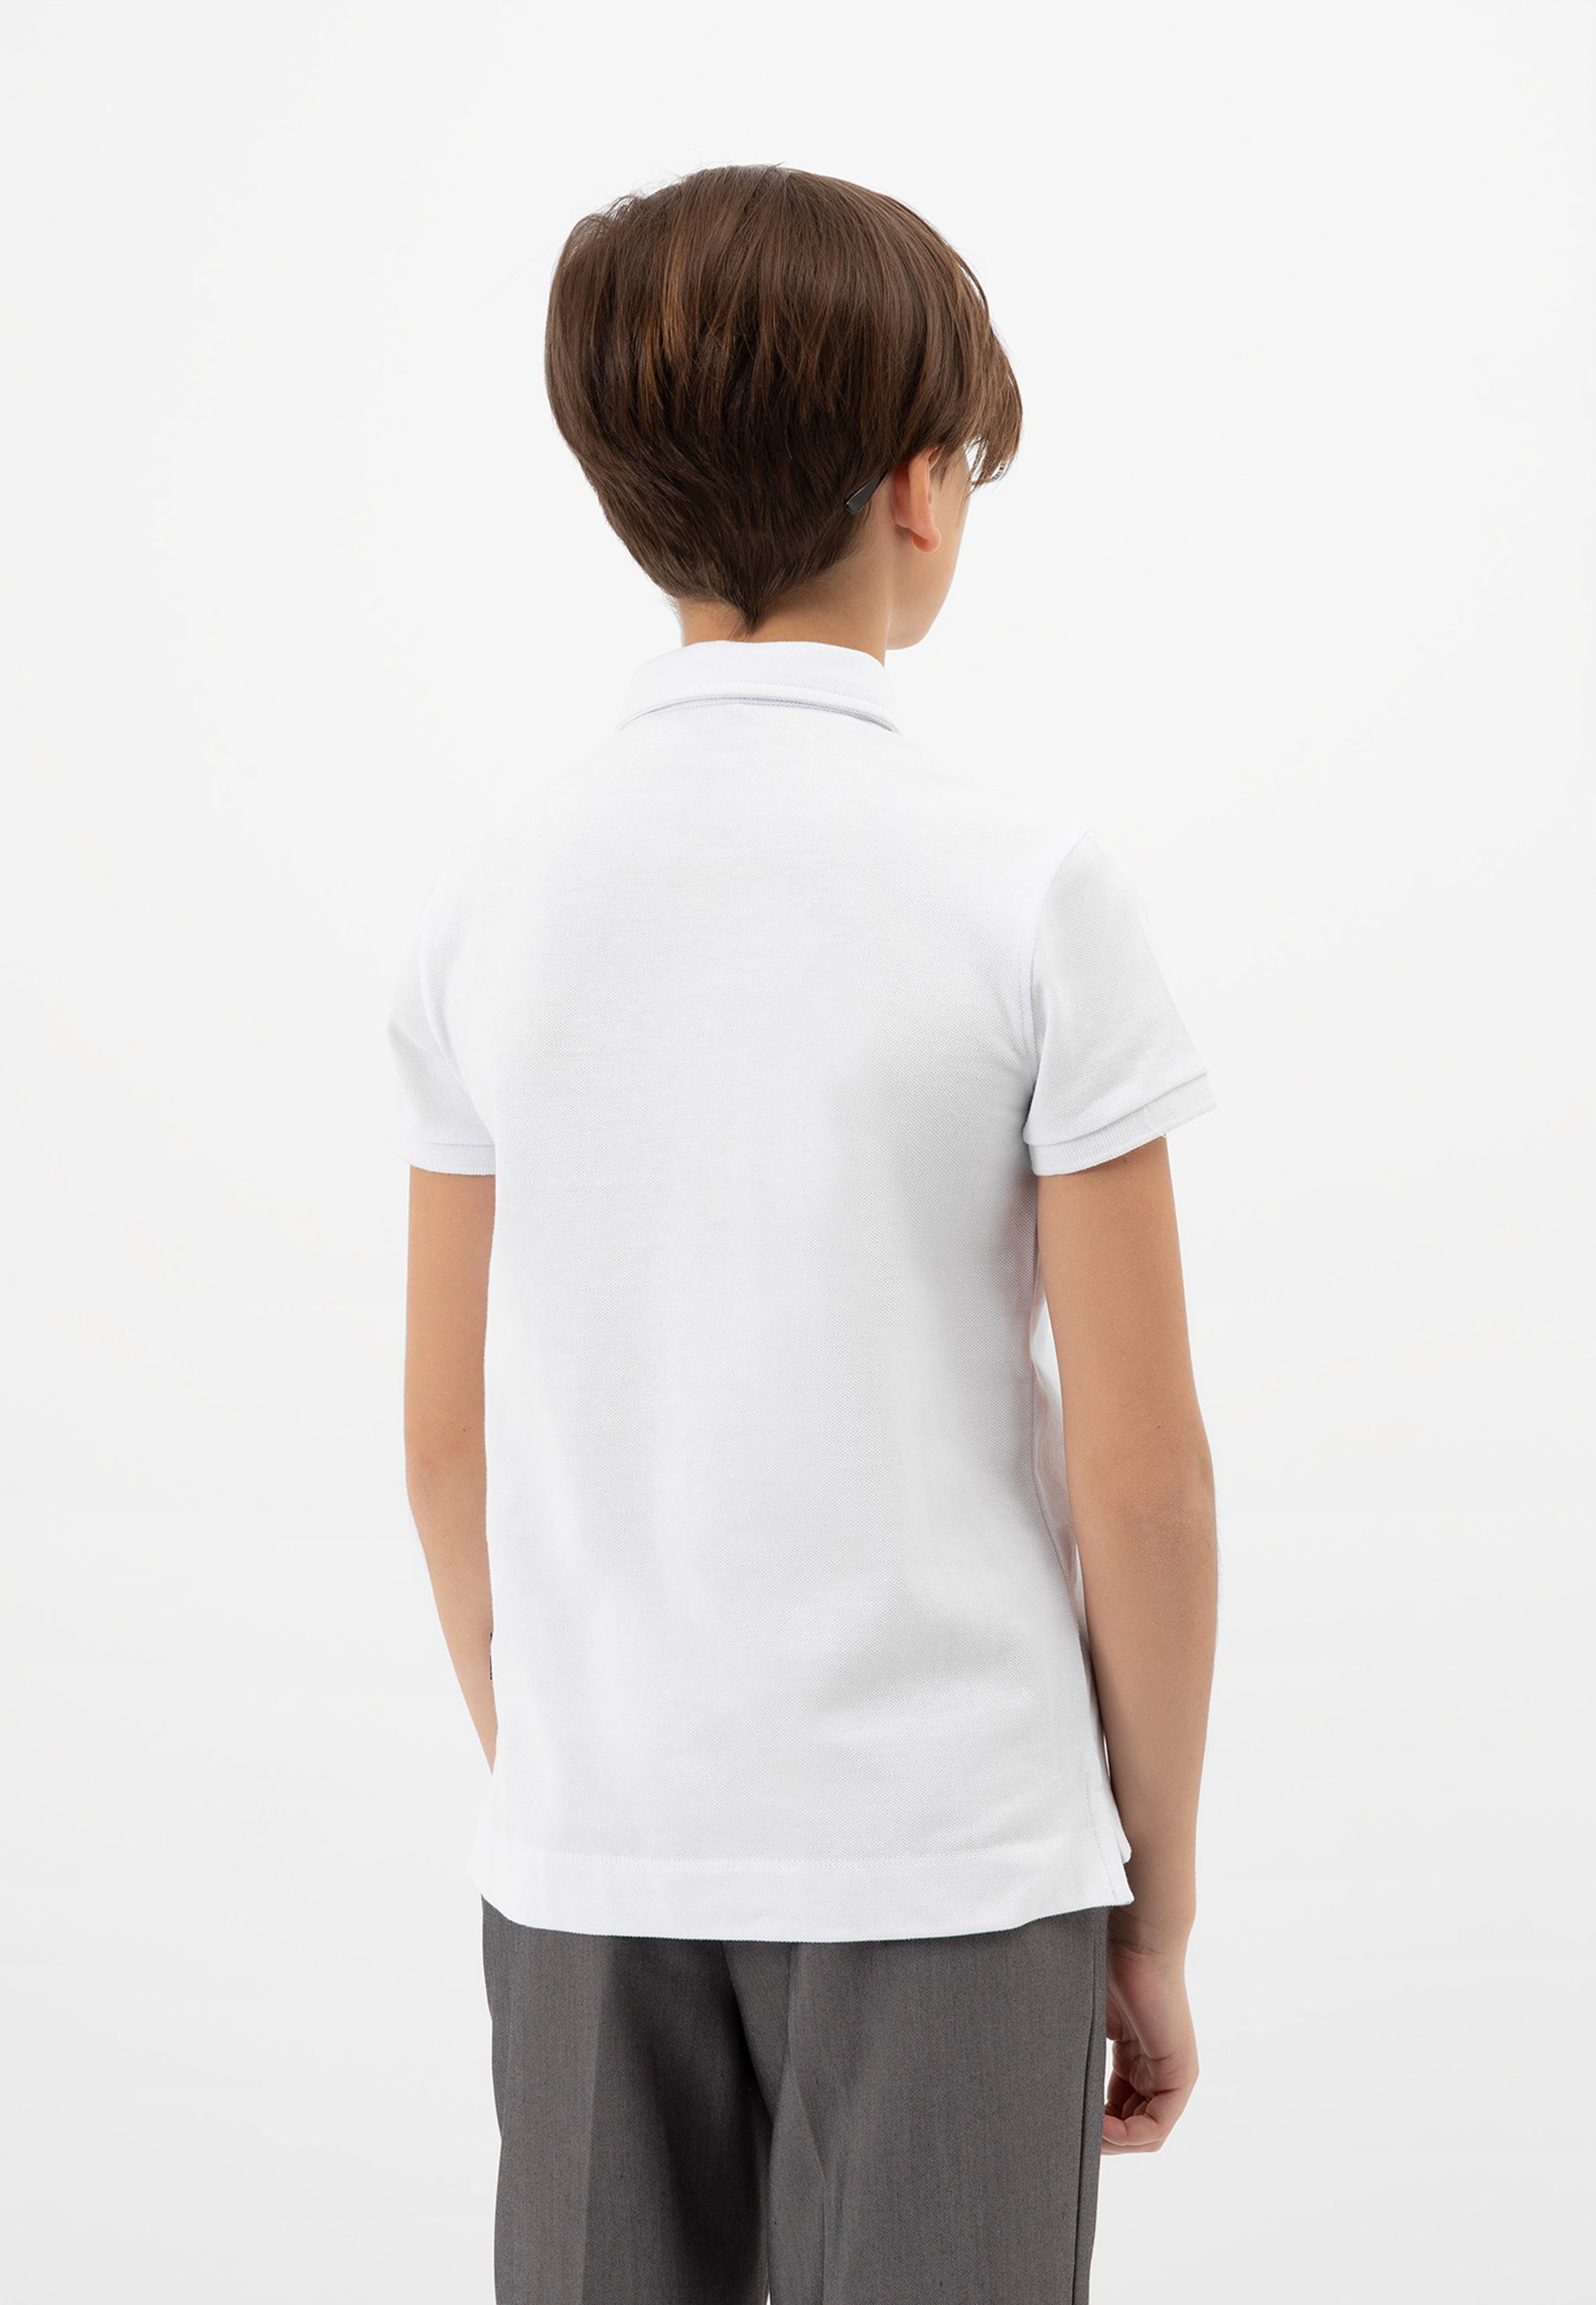 Gulliver Poloshirt in schlichtem Design, oder Stoffhosen, Jeans kombinierbar Ideal Shorts zu